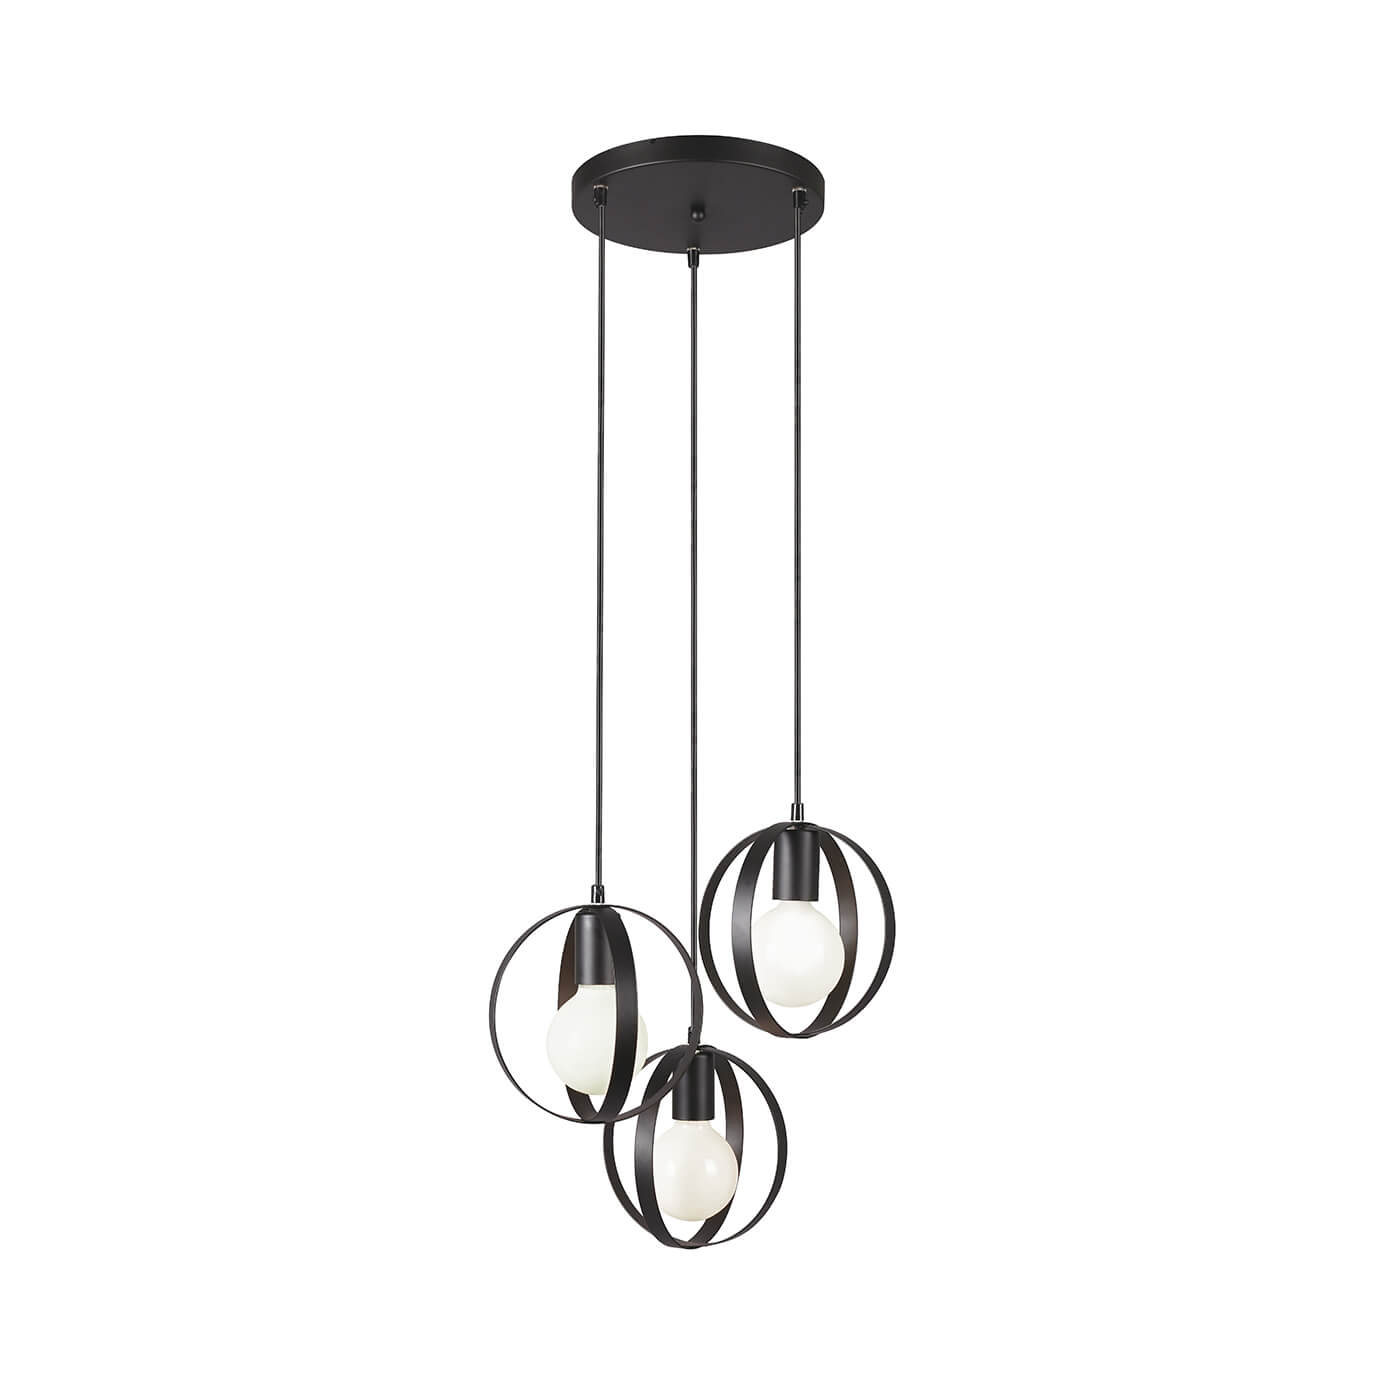 Cauti o lampa suspendata neagra MALOU S3 din metal, design minimalist, elegant, pentru living, dining sau dormitor din colectia de lustre si candelabre Domicilio?